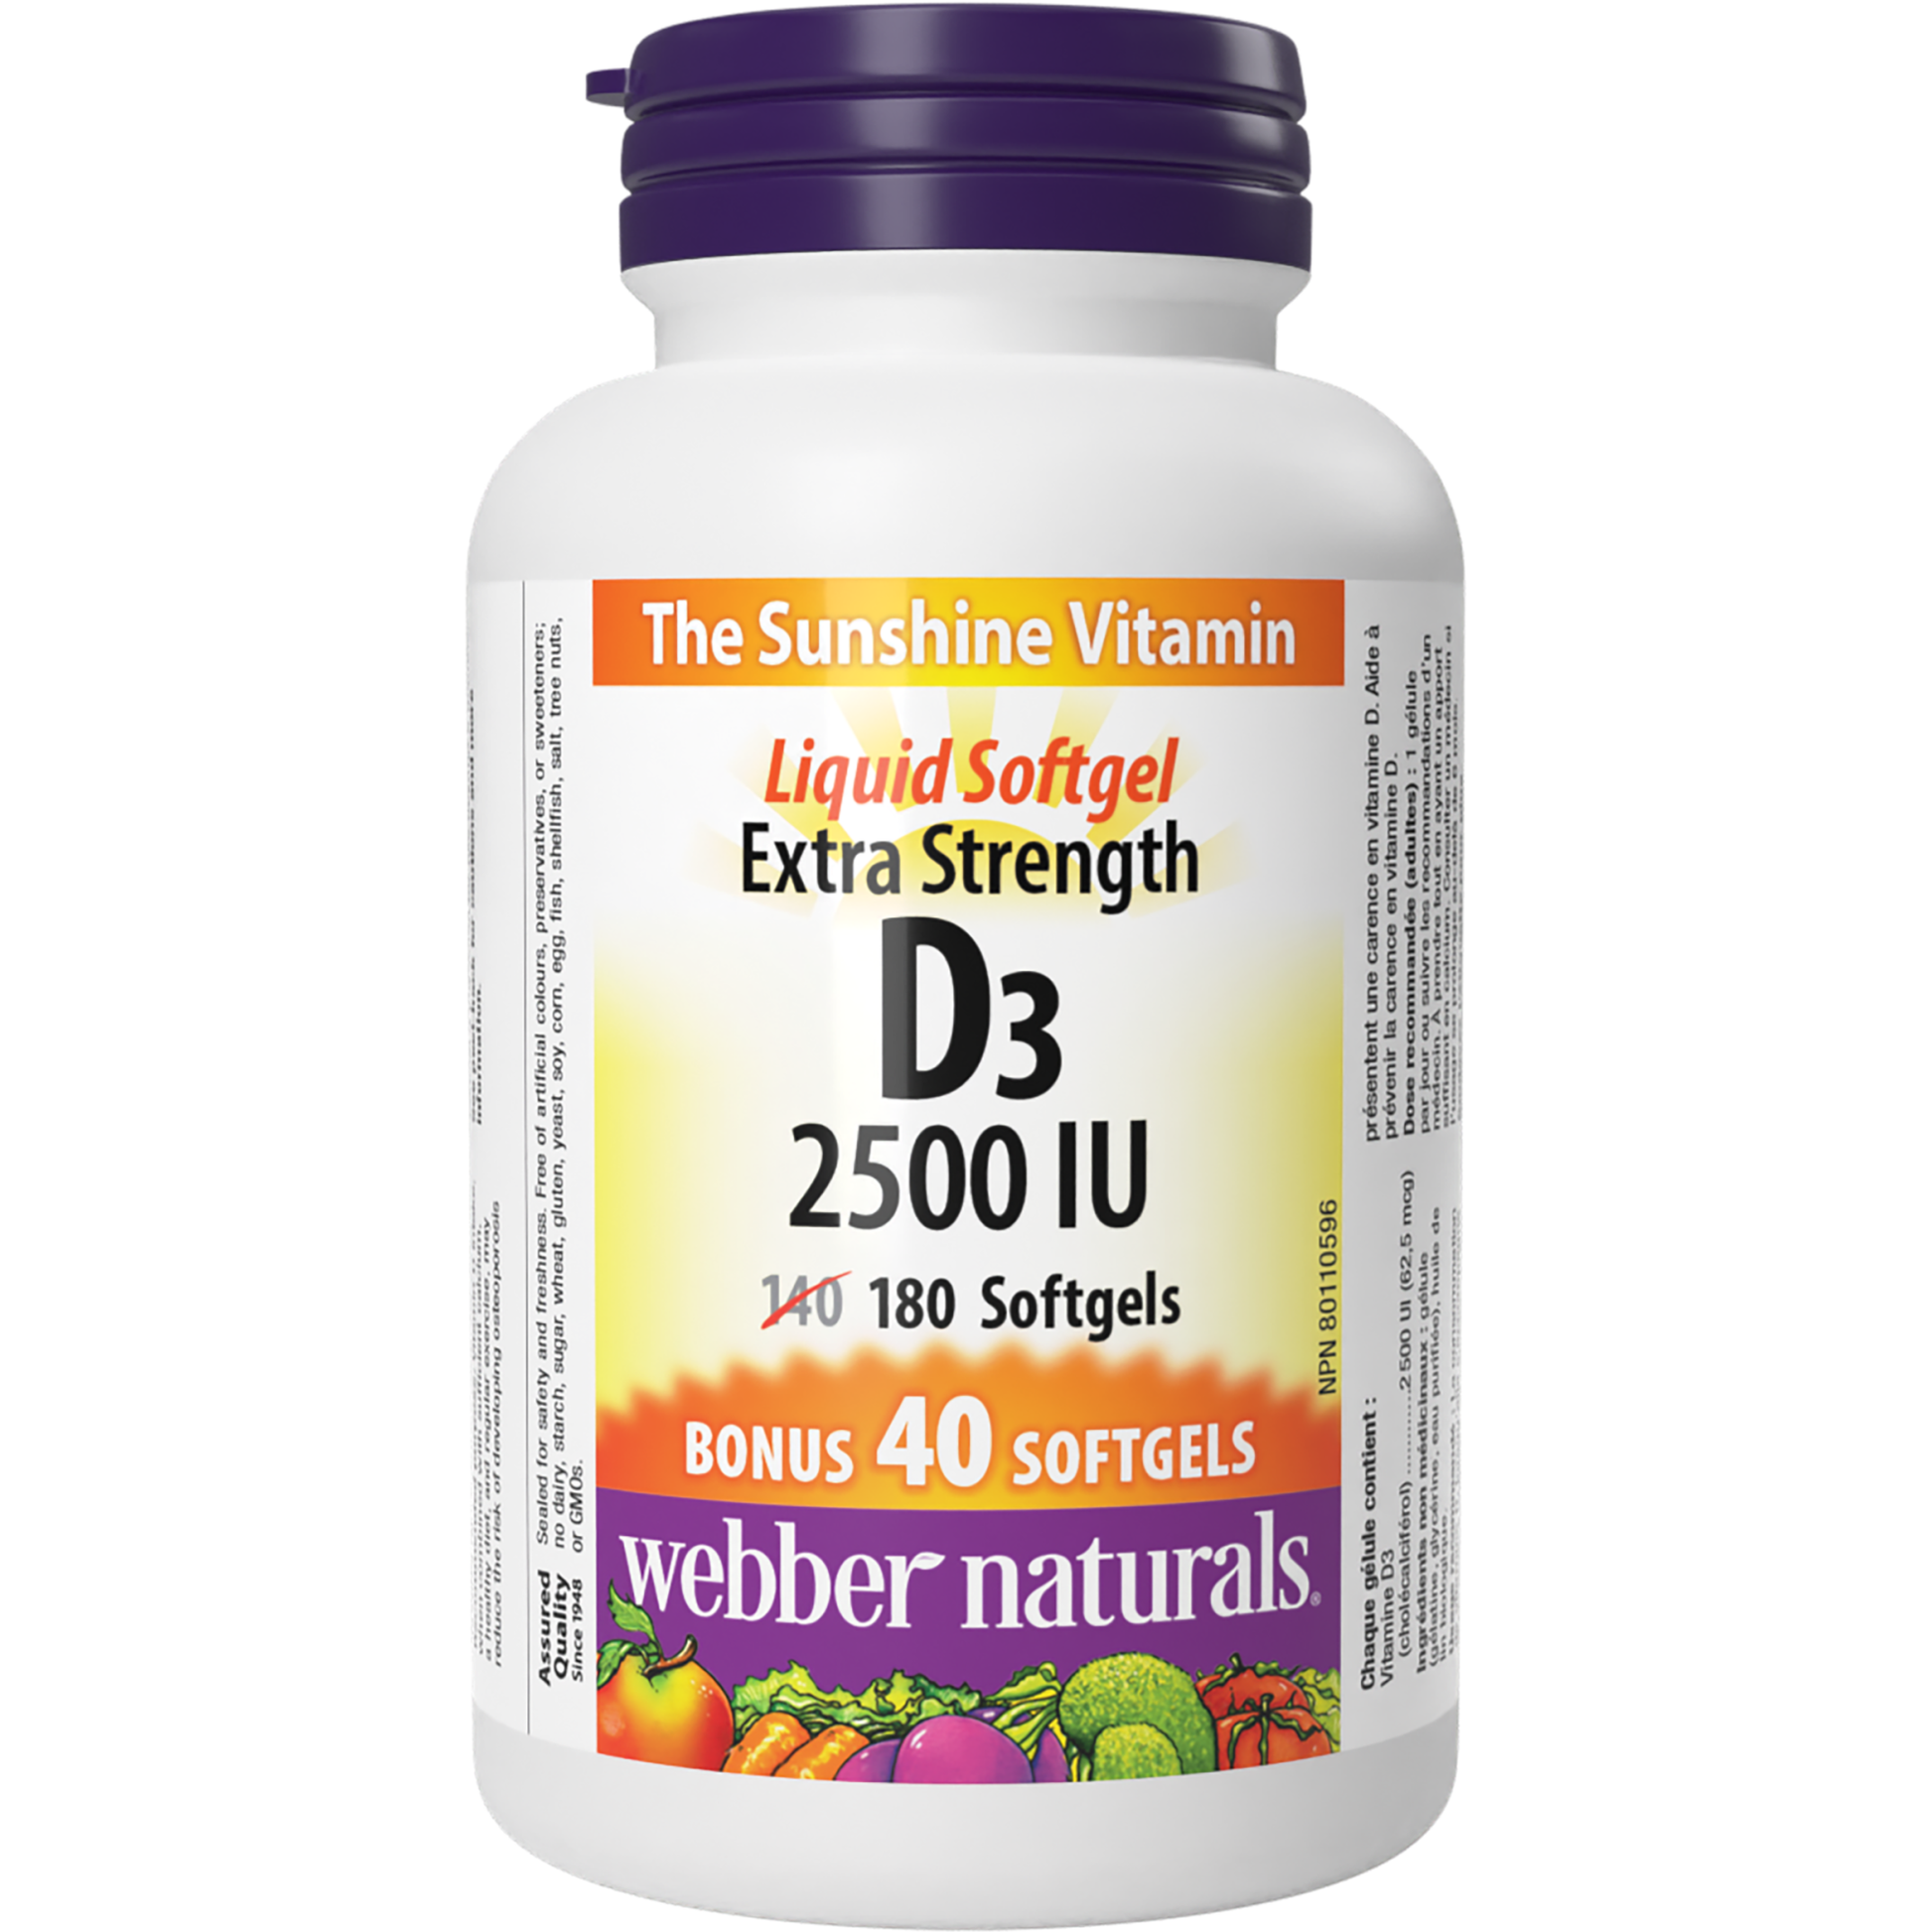 Extra Strength D3 2500 IU for Webber Naturals|v|hi-res|WN3818